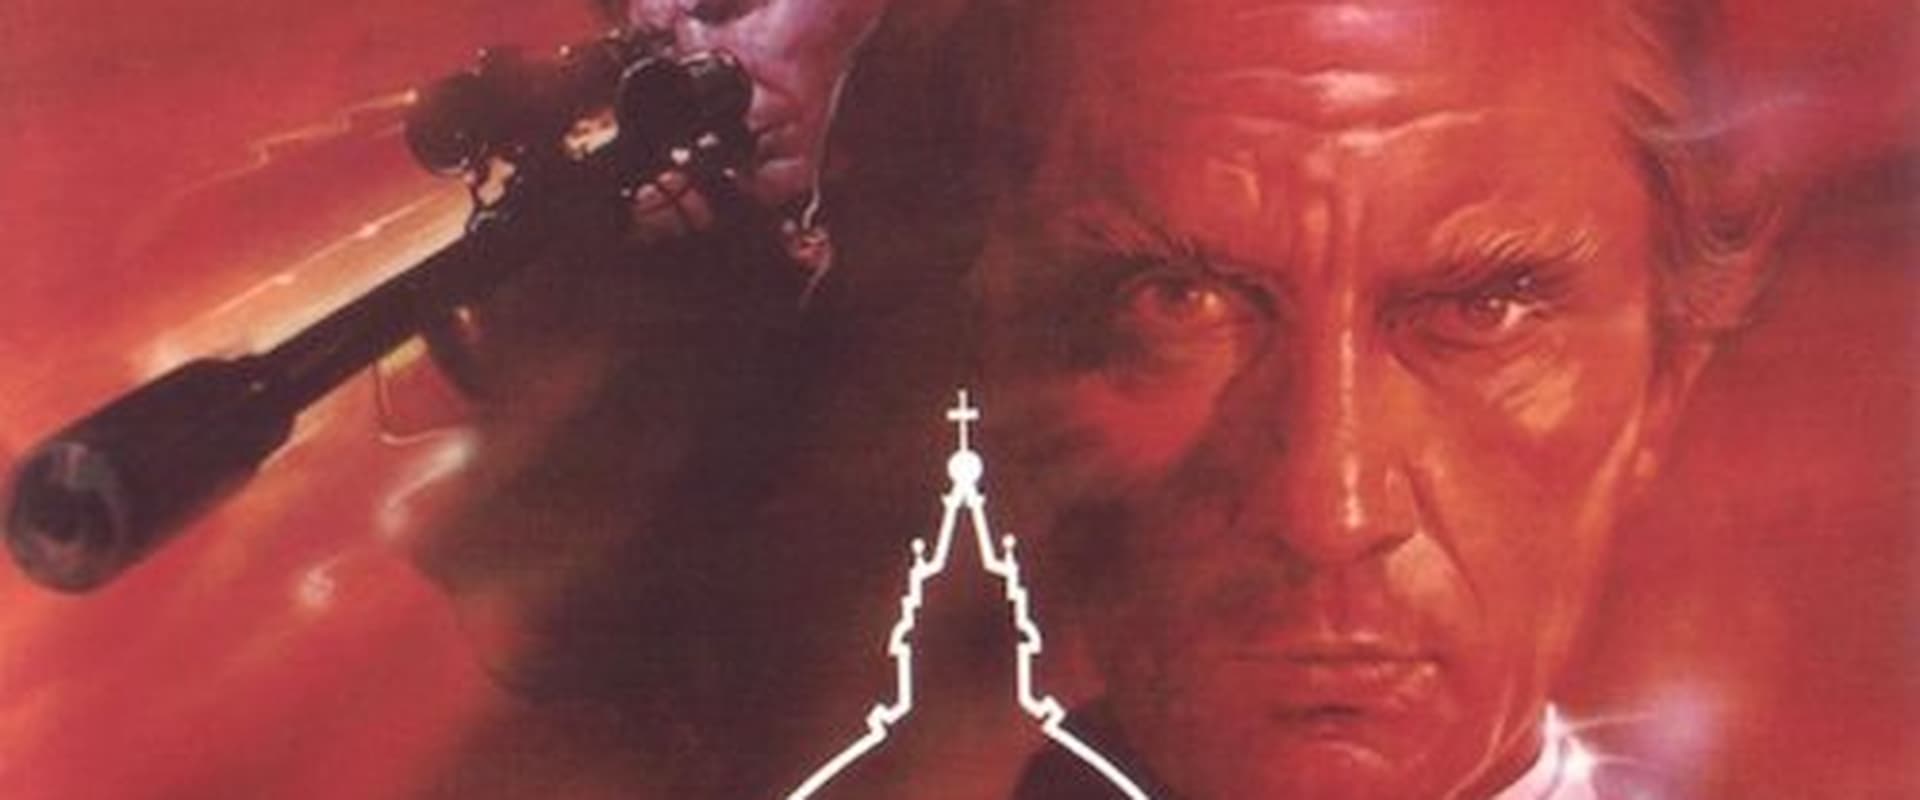 Morte in Vaticano (1982)